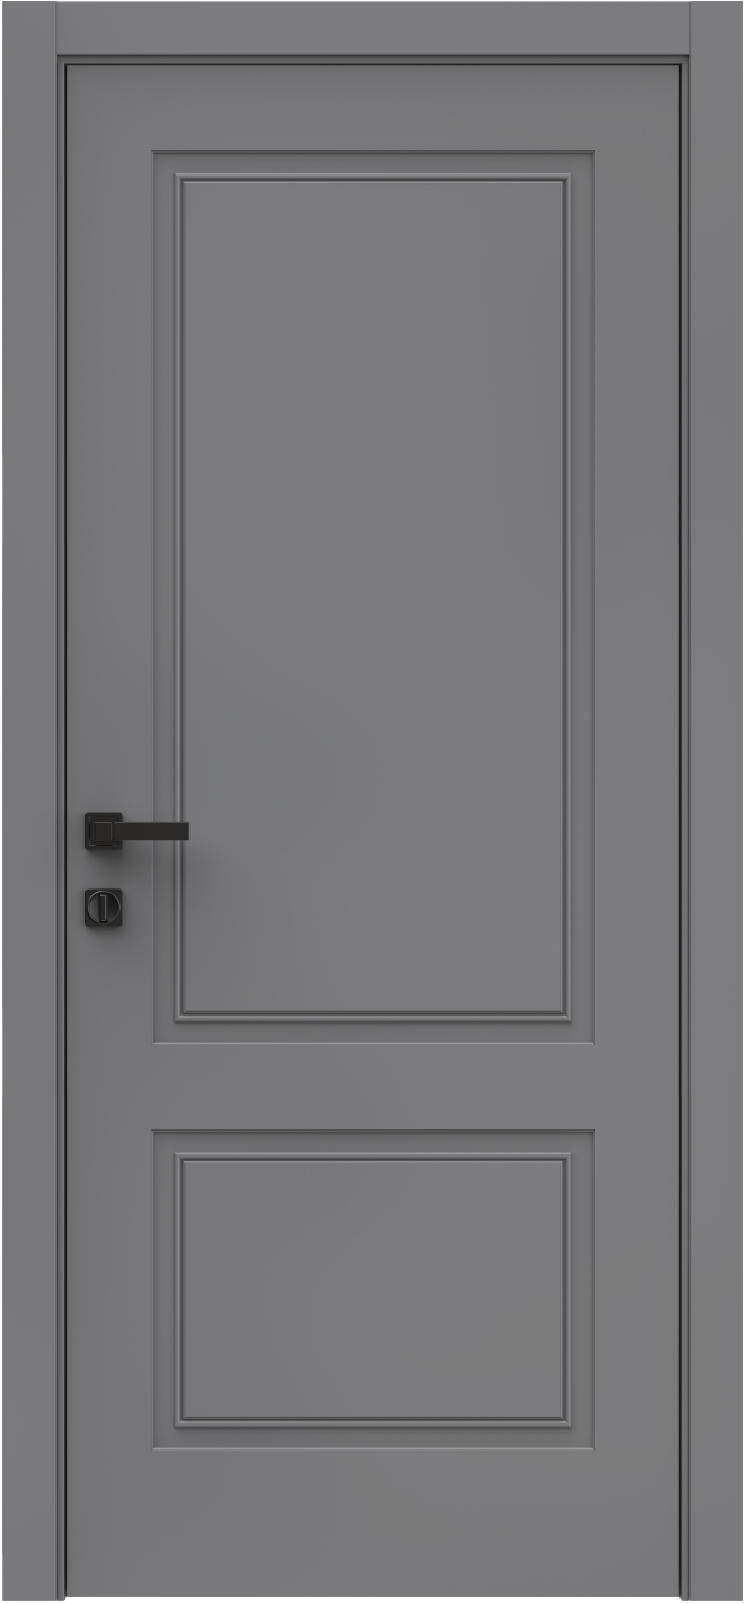 Questdoors Межкомнатная дверь QES2, арт. 26317 - фото №1